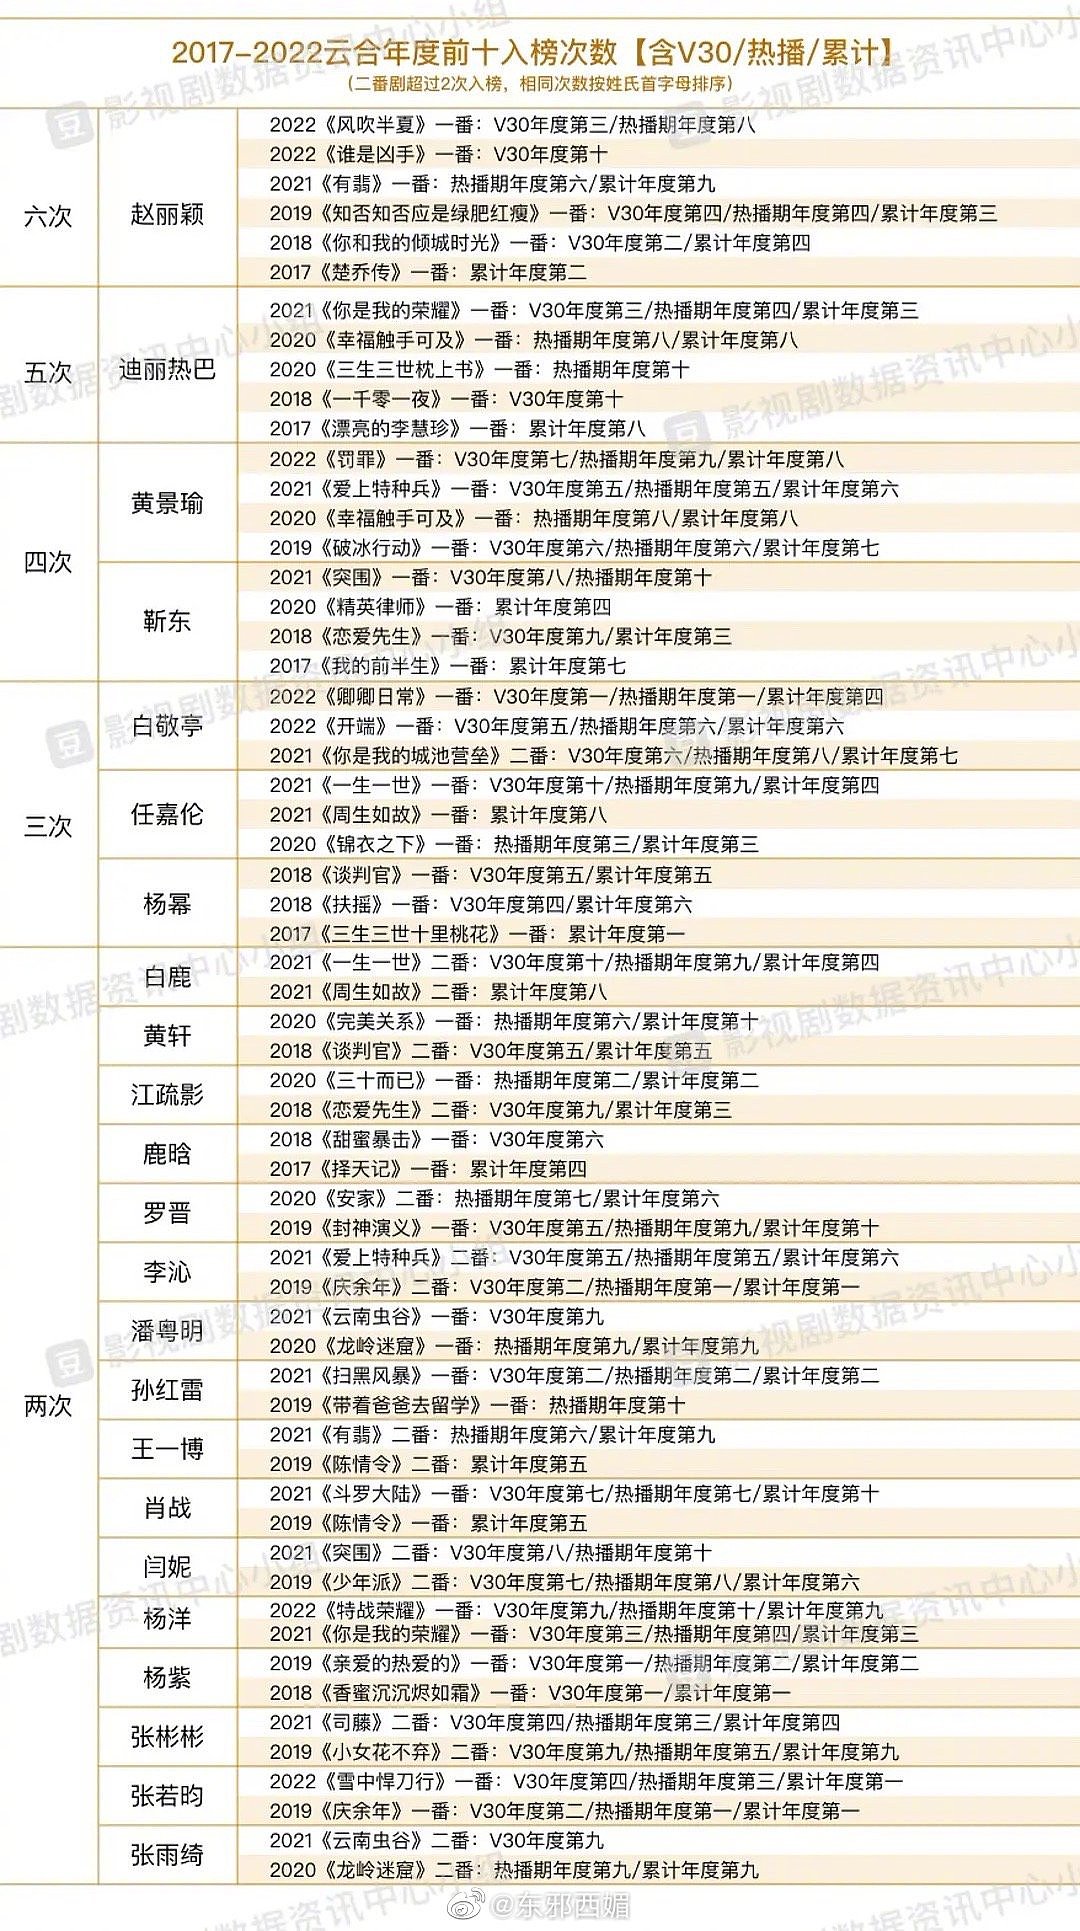 2017-2022年电视剧云合集均top10榜…… - 1